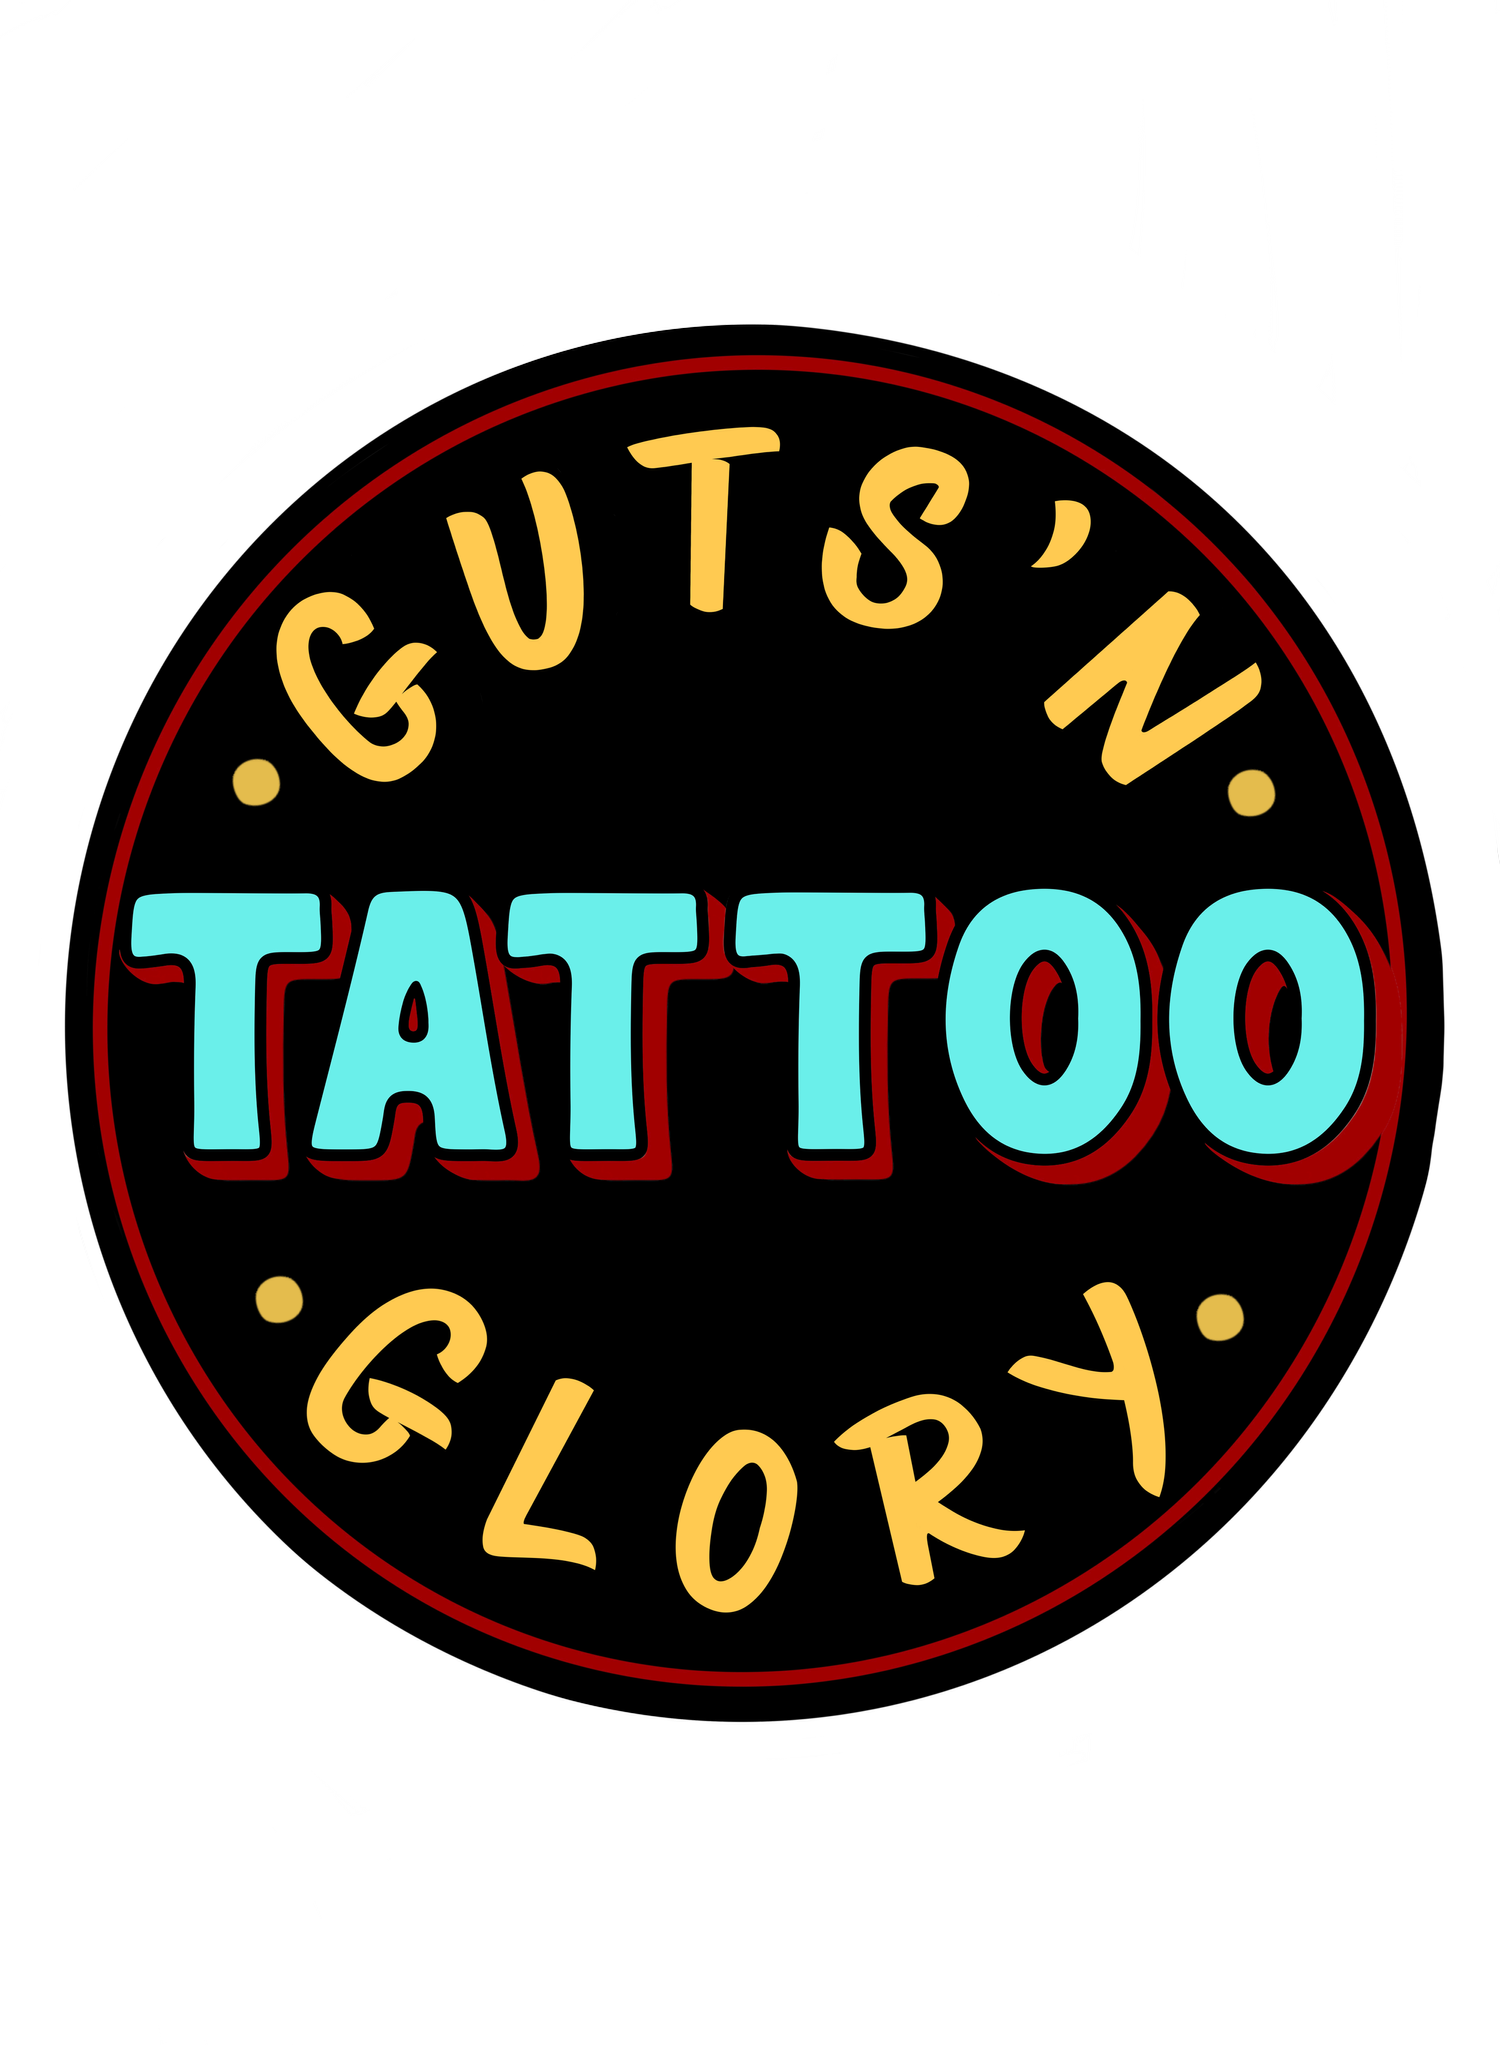 Guts’N Glory Tattoo